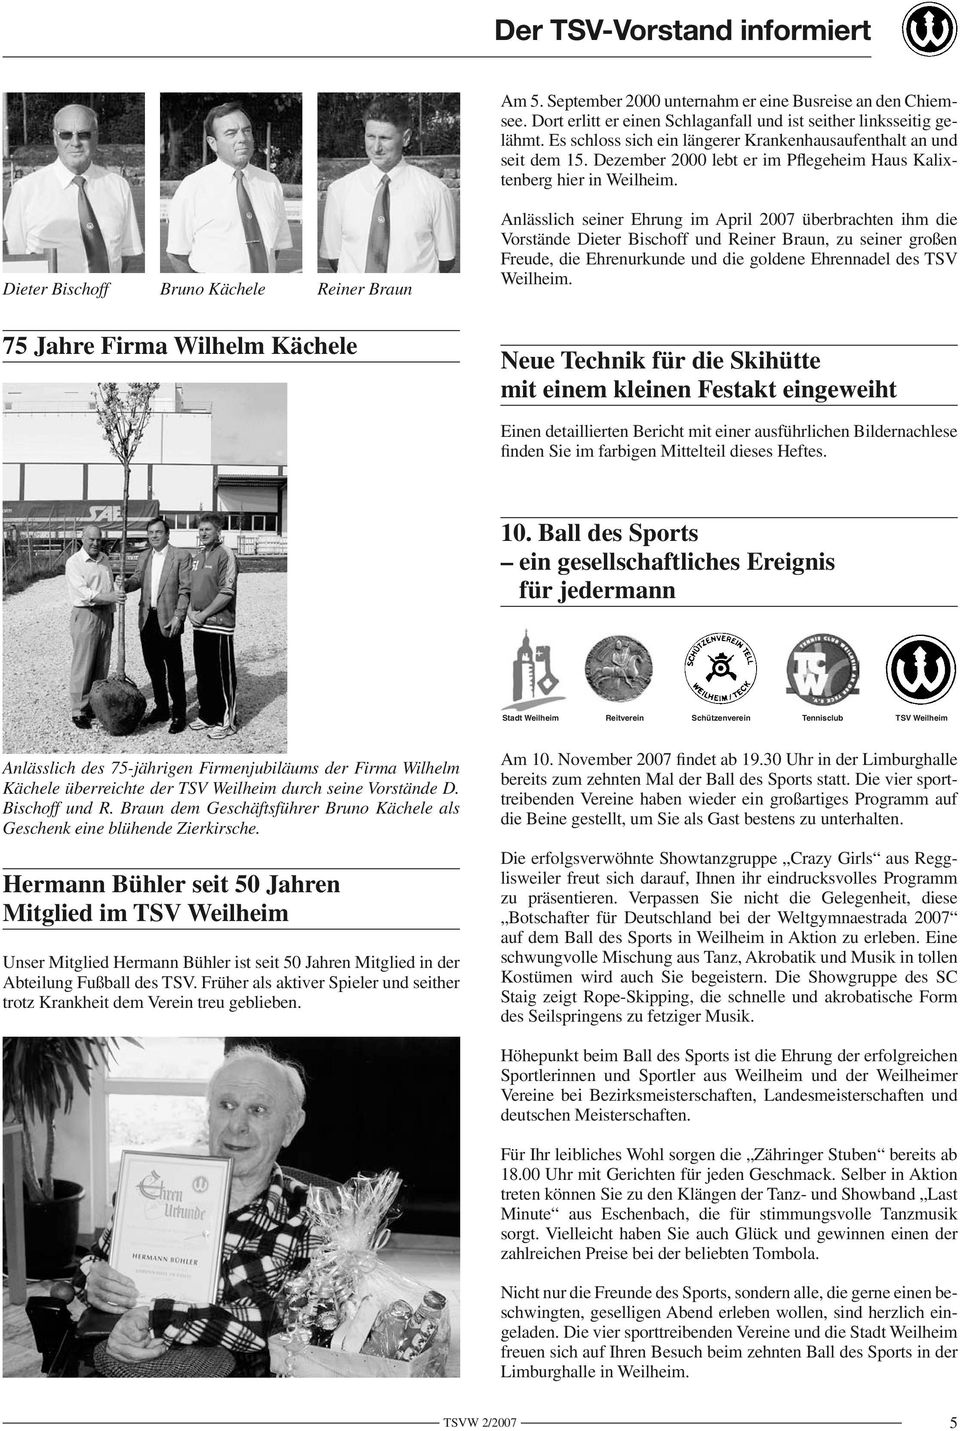 Dieter Bischoff Bruno Kächele Reiner Braun 75 Jahre Firma Wilhelm Kächele Anlässlich seiner Ehrung im April 2007 überbrachten ihm die Vorstände Dieter Bischoff und Reiner Braun, zu seiner großen